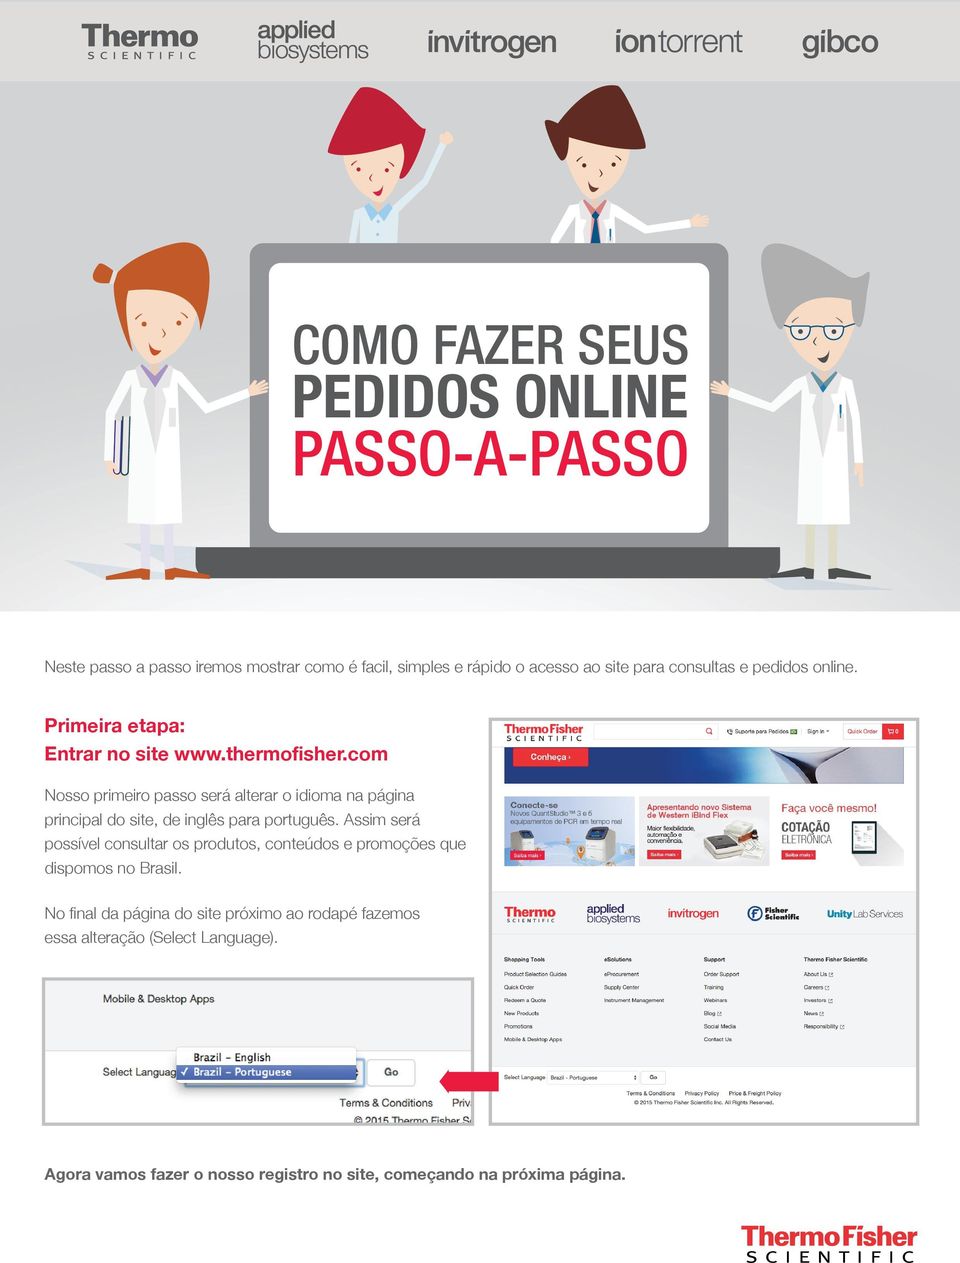 com Nosso primeiro passo será alterar o idioma na página principal do site, de inglês para português.